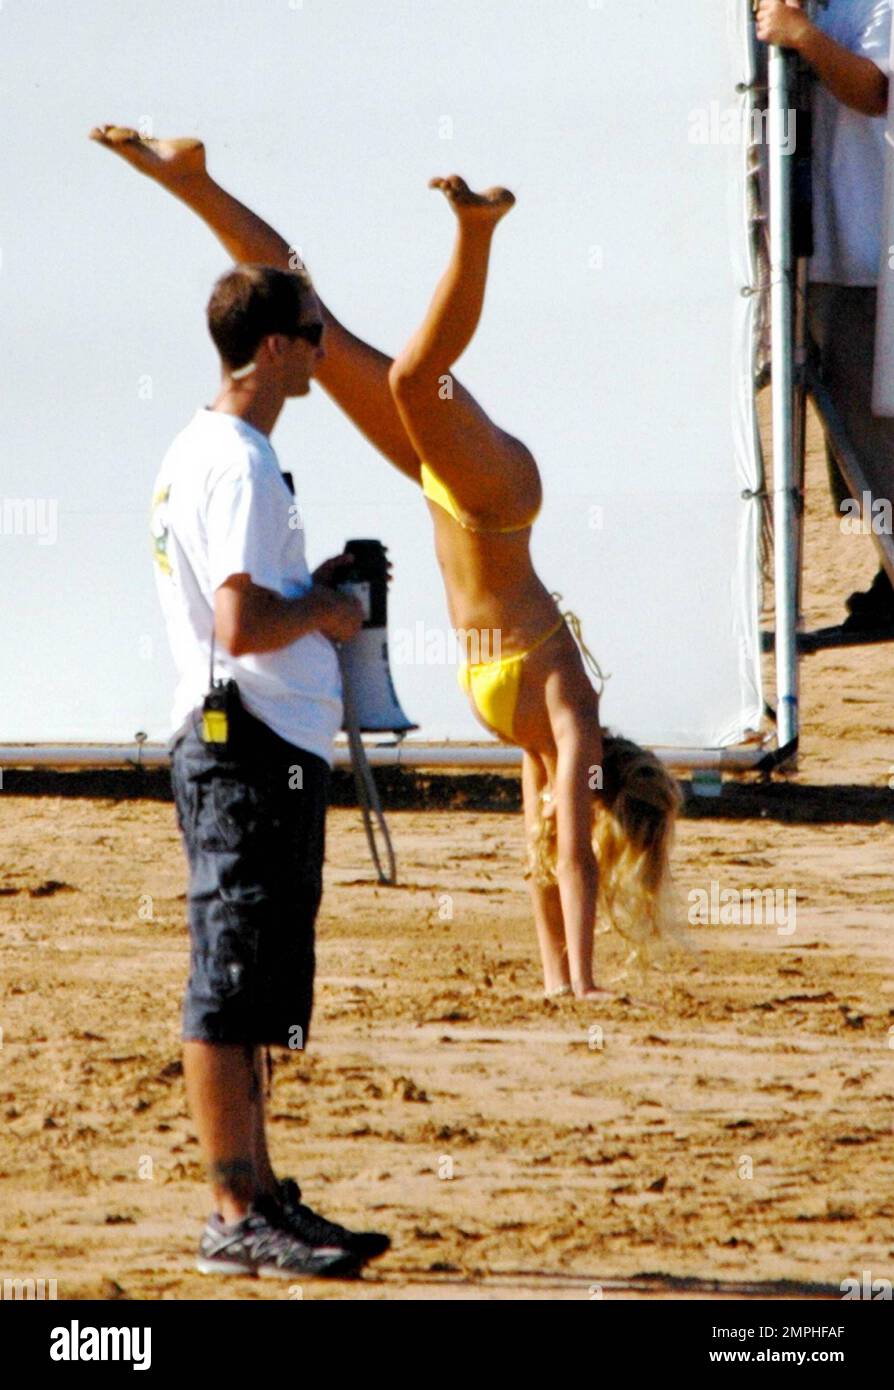 Just Go with It (2011) bikini catfight: Jennifer Aniston vs Brooklyn Decker